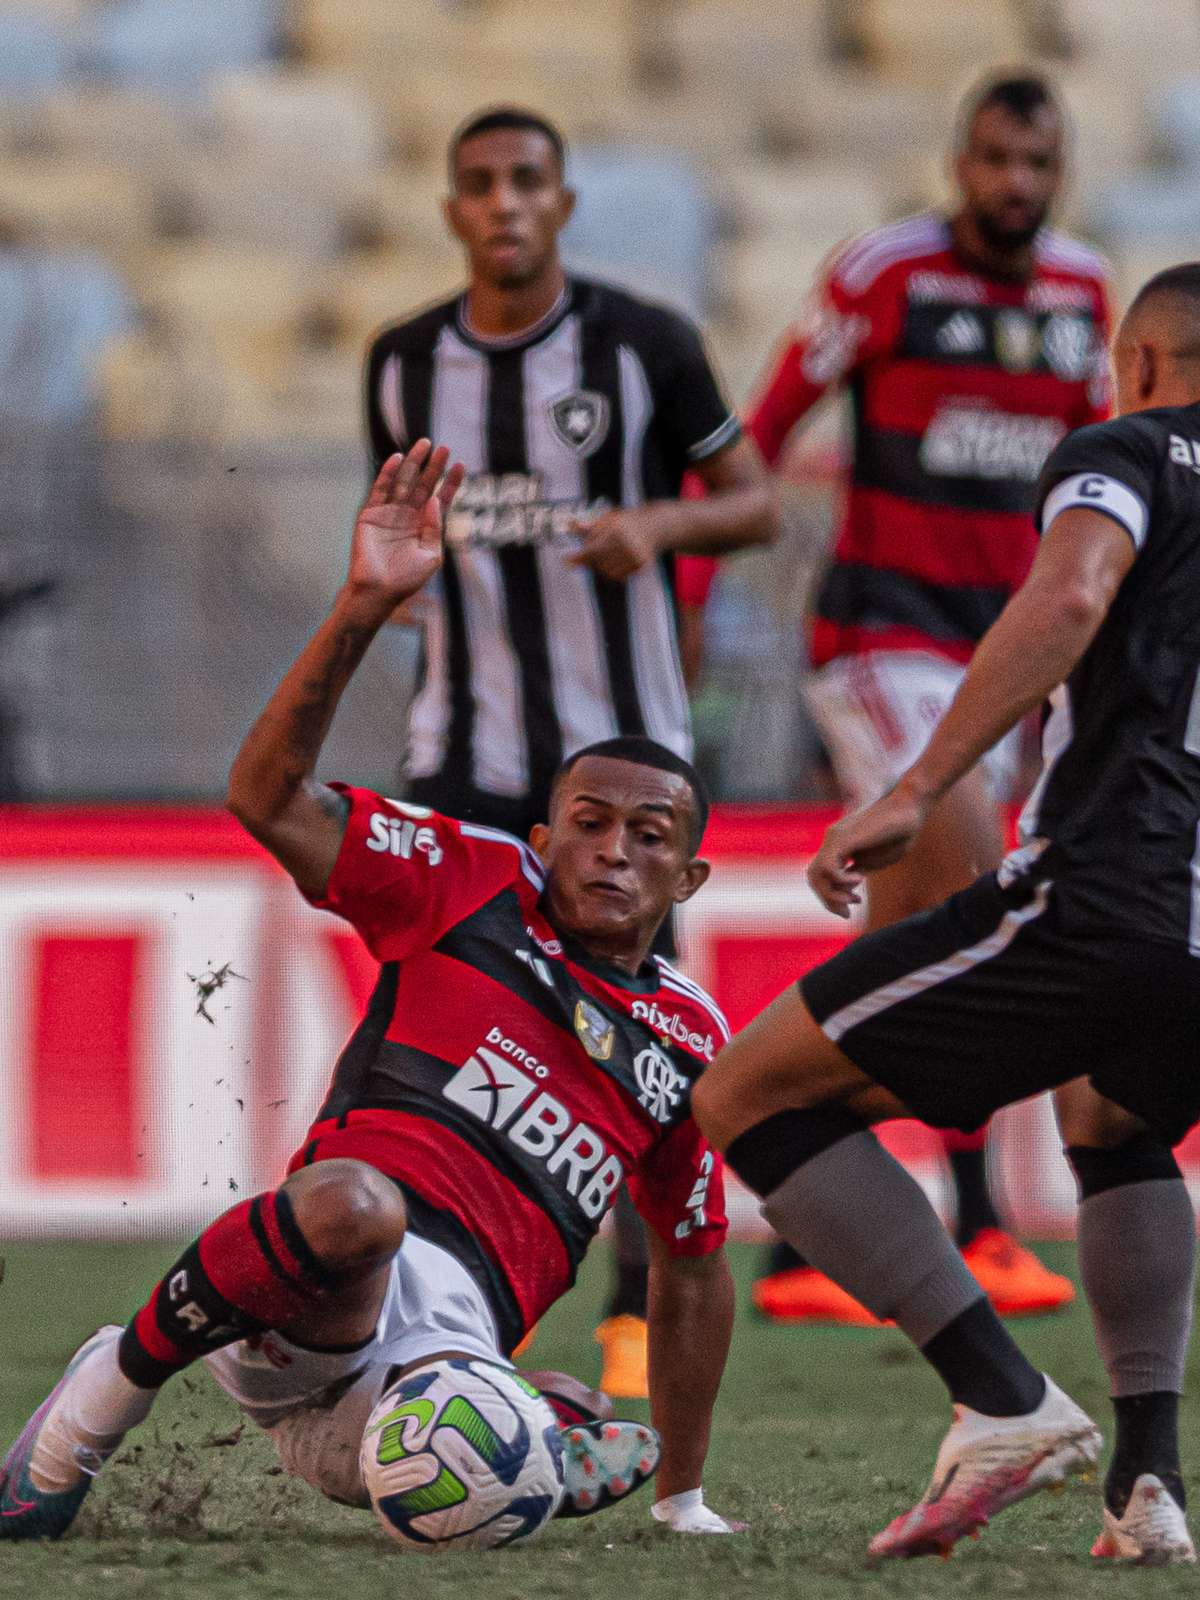 Wesley pede passagem e pode ser solução para lateral direita do Flamengo, Flamengo